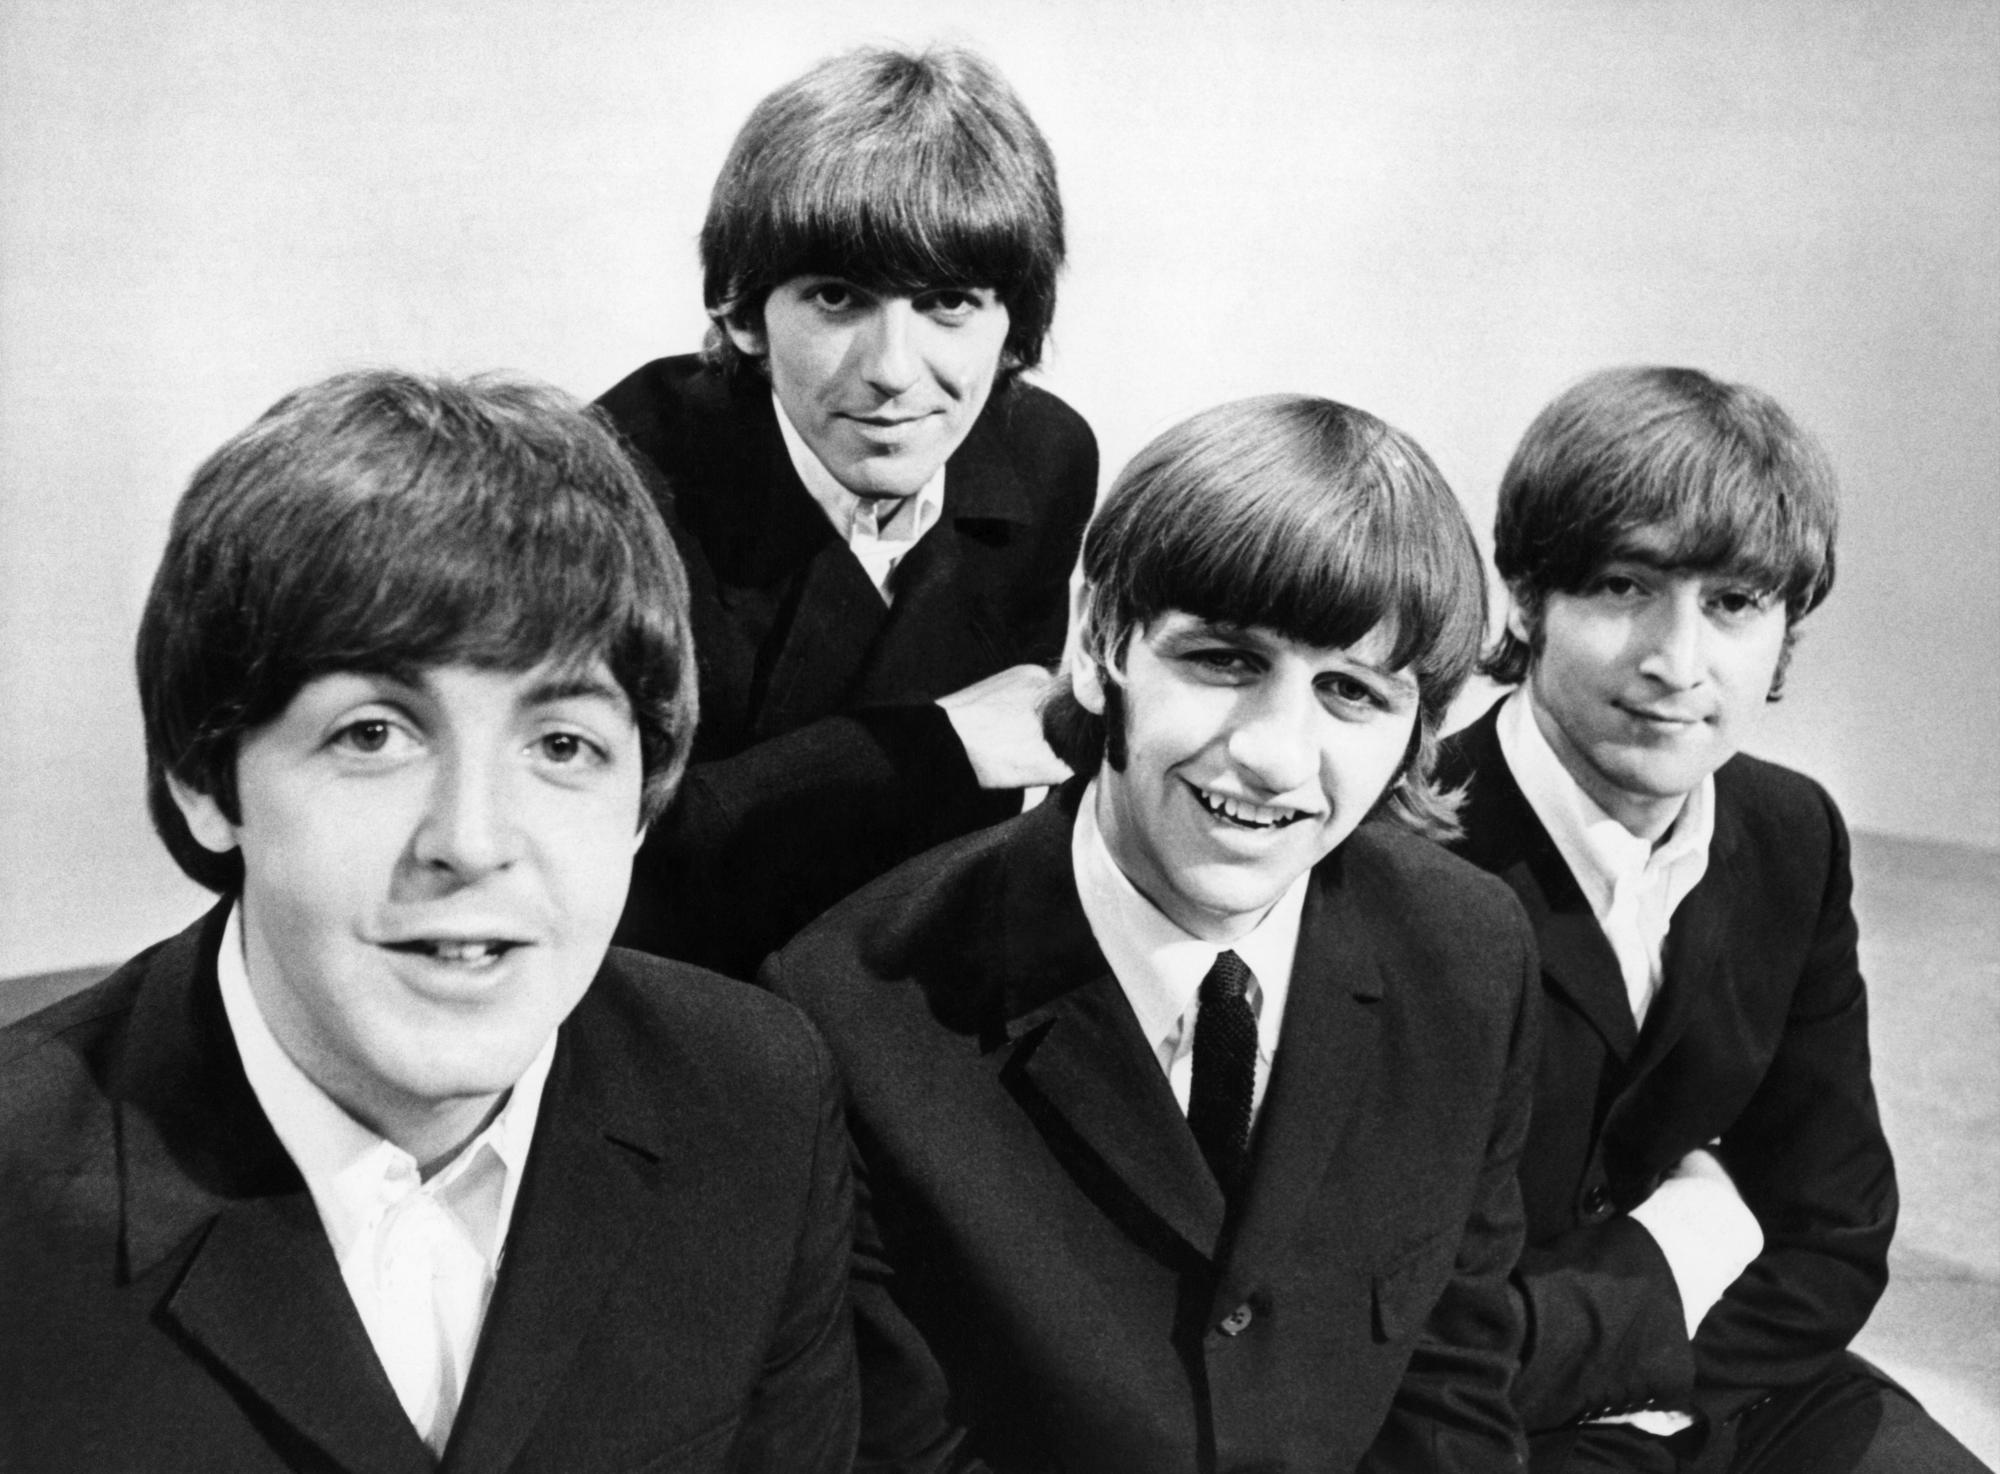 $!Los componentes del grupo The Beatles, Paul McCartney (bajista), George Harrison (guitarra), Ringo Starr (batería), y John Lennon (guitarra), durante un posado gráfico en los Estudiso de televisión de la BBC en Londres en 1966. EFE.